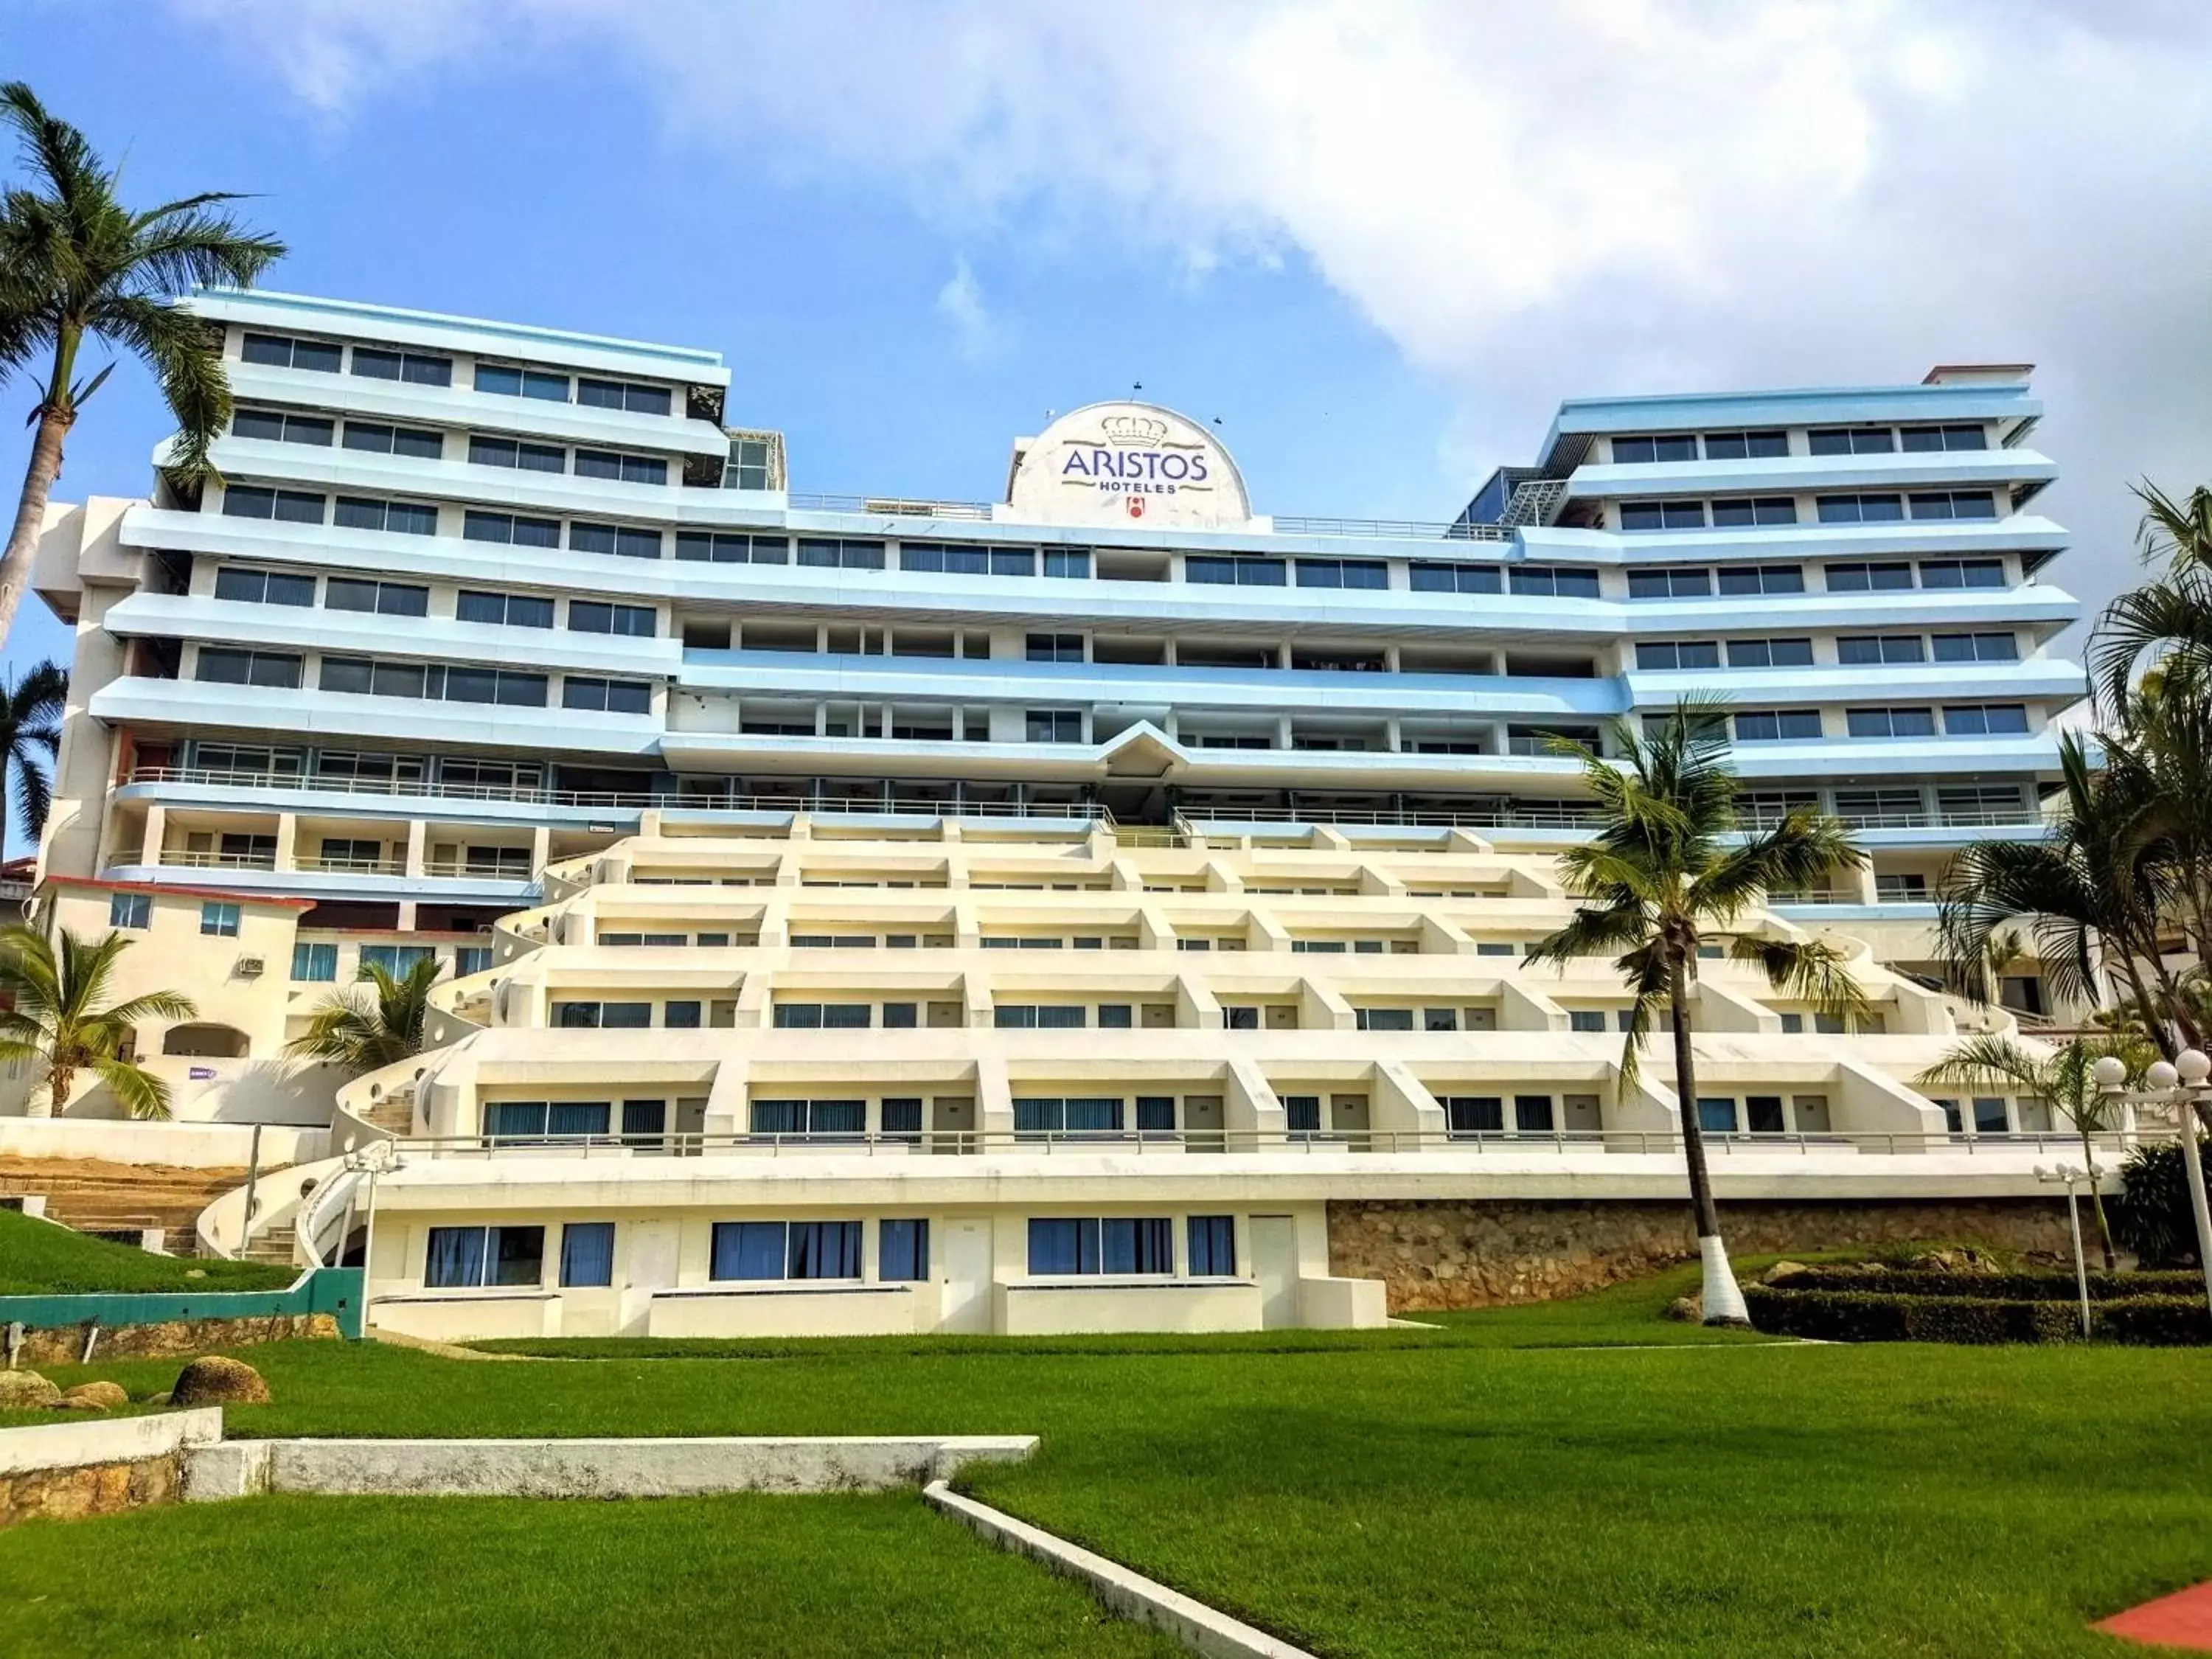 Property Building in Hotel Aristos Acapulco